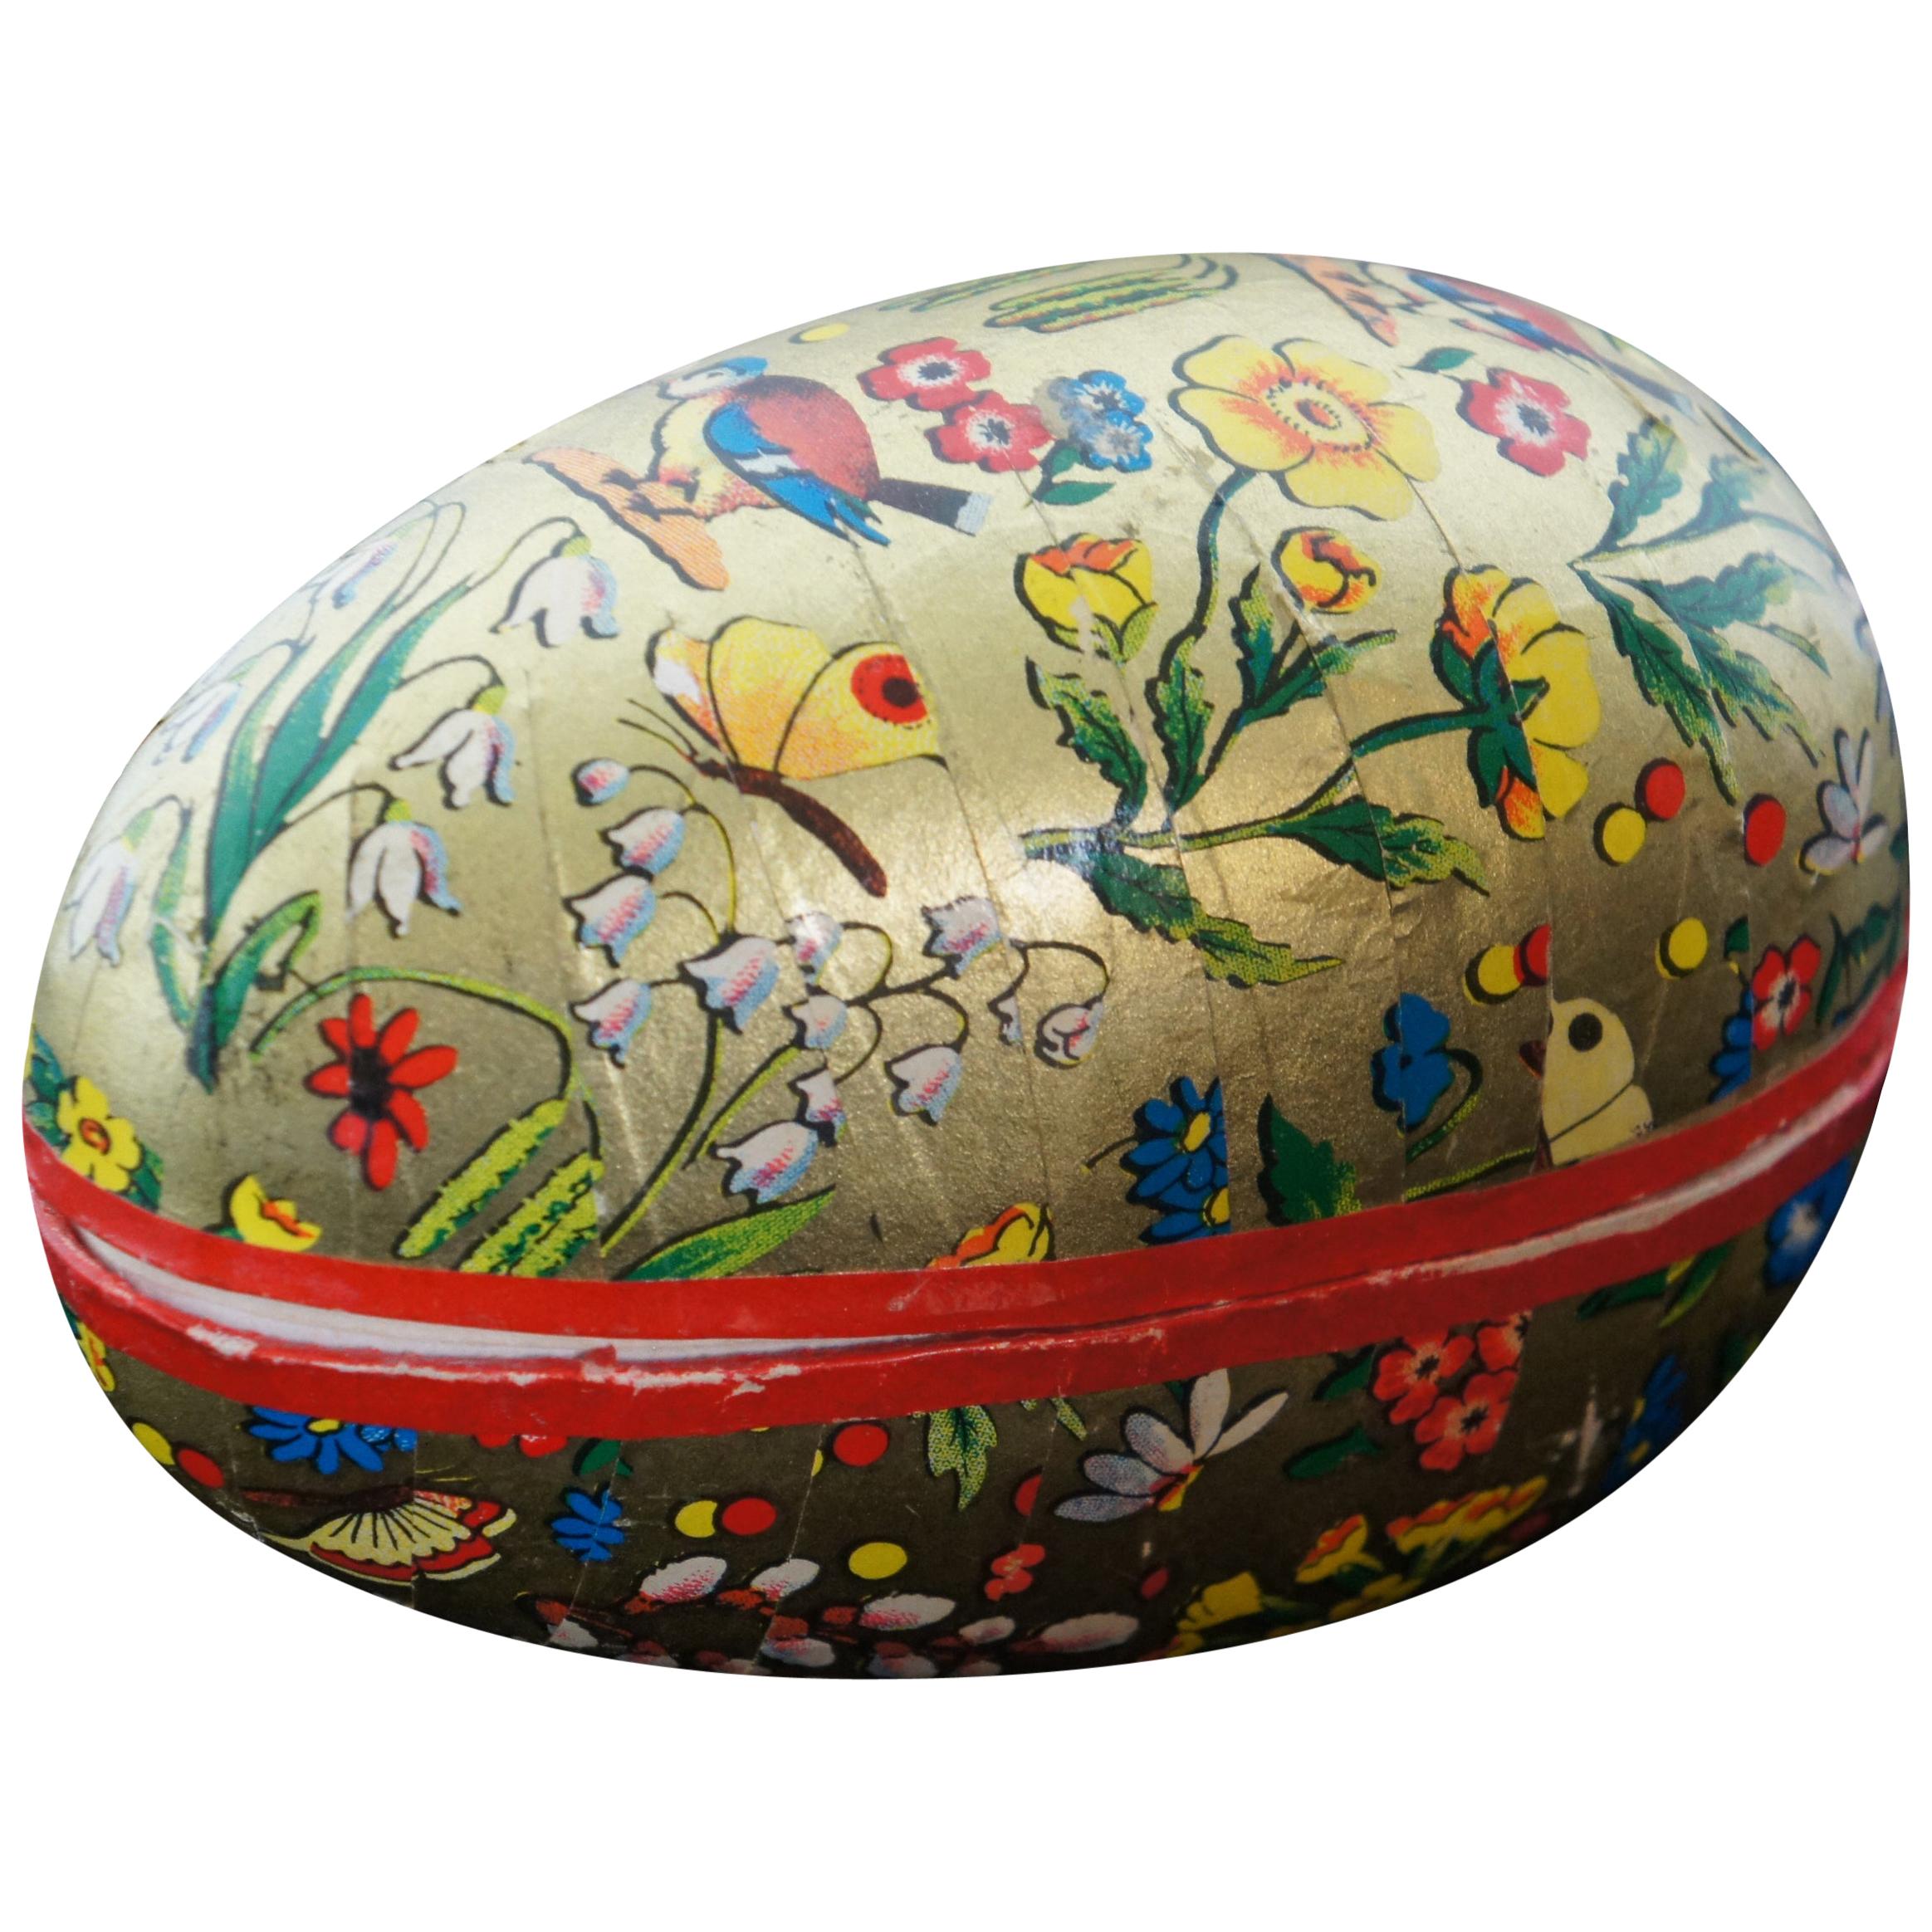 Papier Mache Shapes Sale 18cm Paper Mache Standing Easter Egg with Details